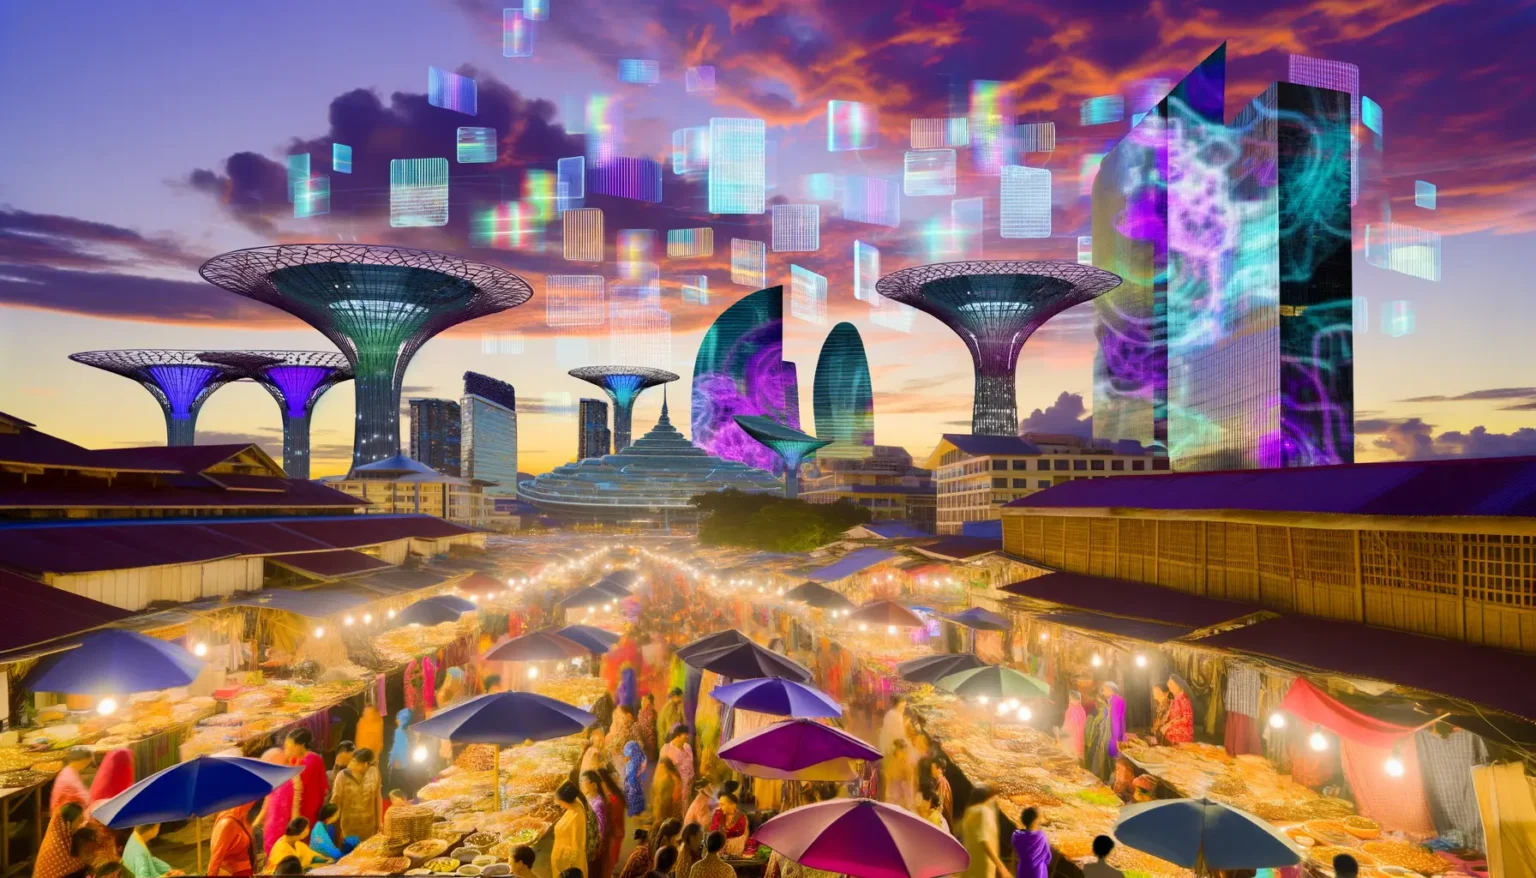 Eine lebhafte Marktszene bei Sonnenuntergang mit Menschen, die zwischen Ständen mit farbigen Schirmen schlendern, vor dem Hintergrund futuristischer Strukturen und Gebäude mit schwebenden digitalen Elementen, am Nachthimmel erscheinend.